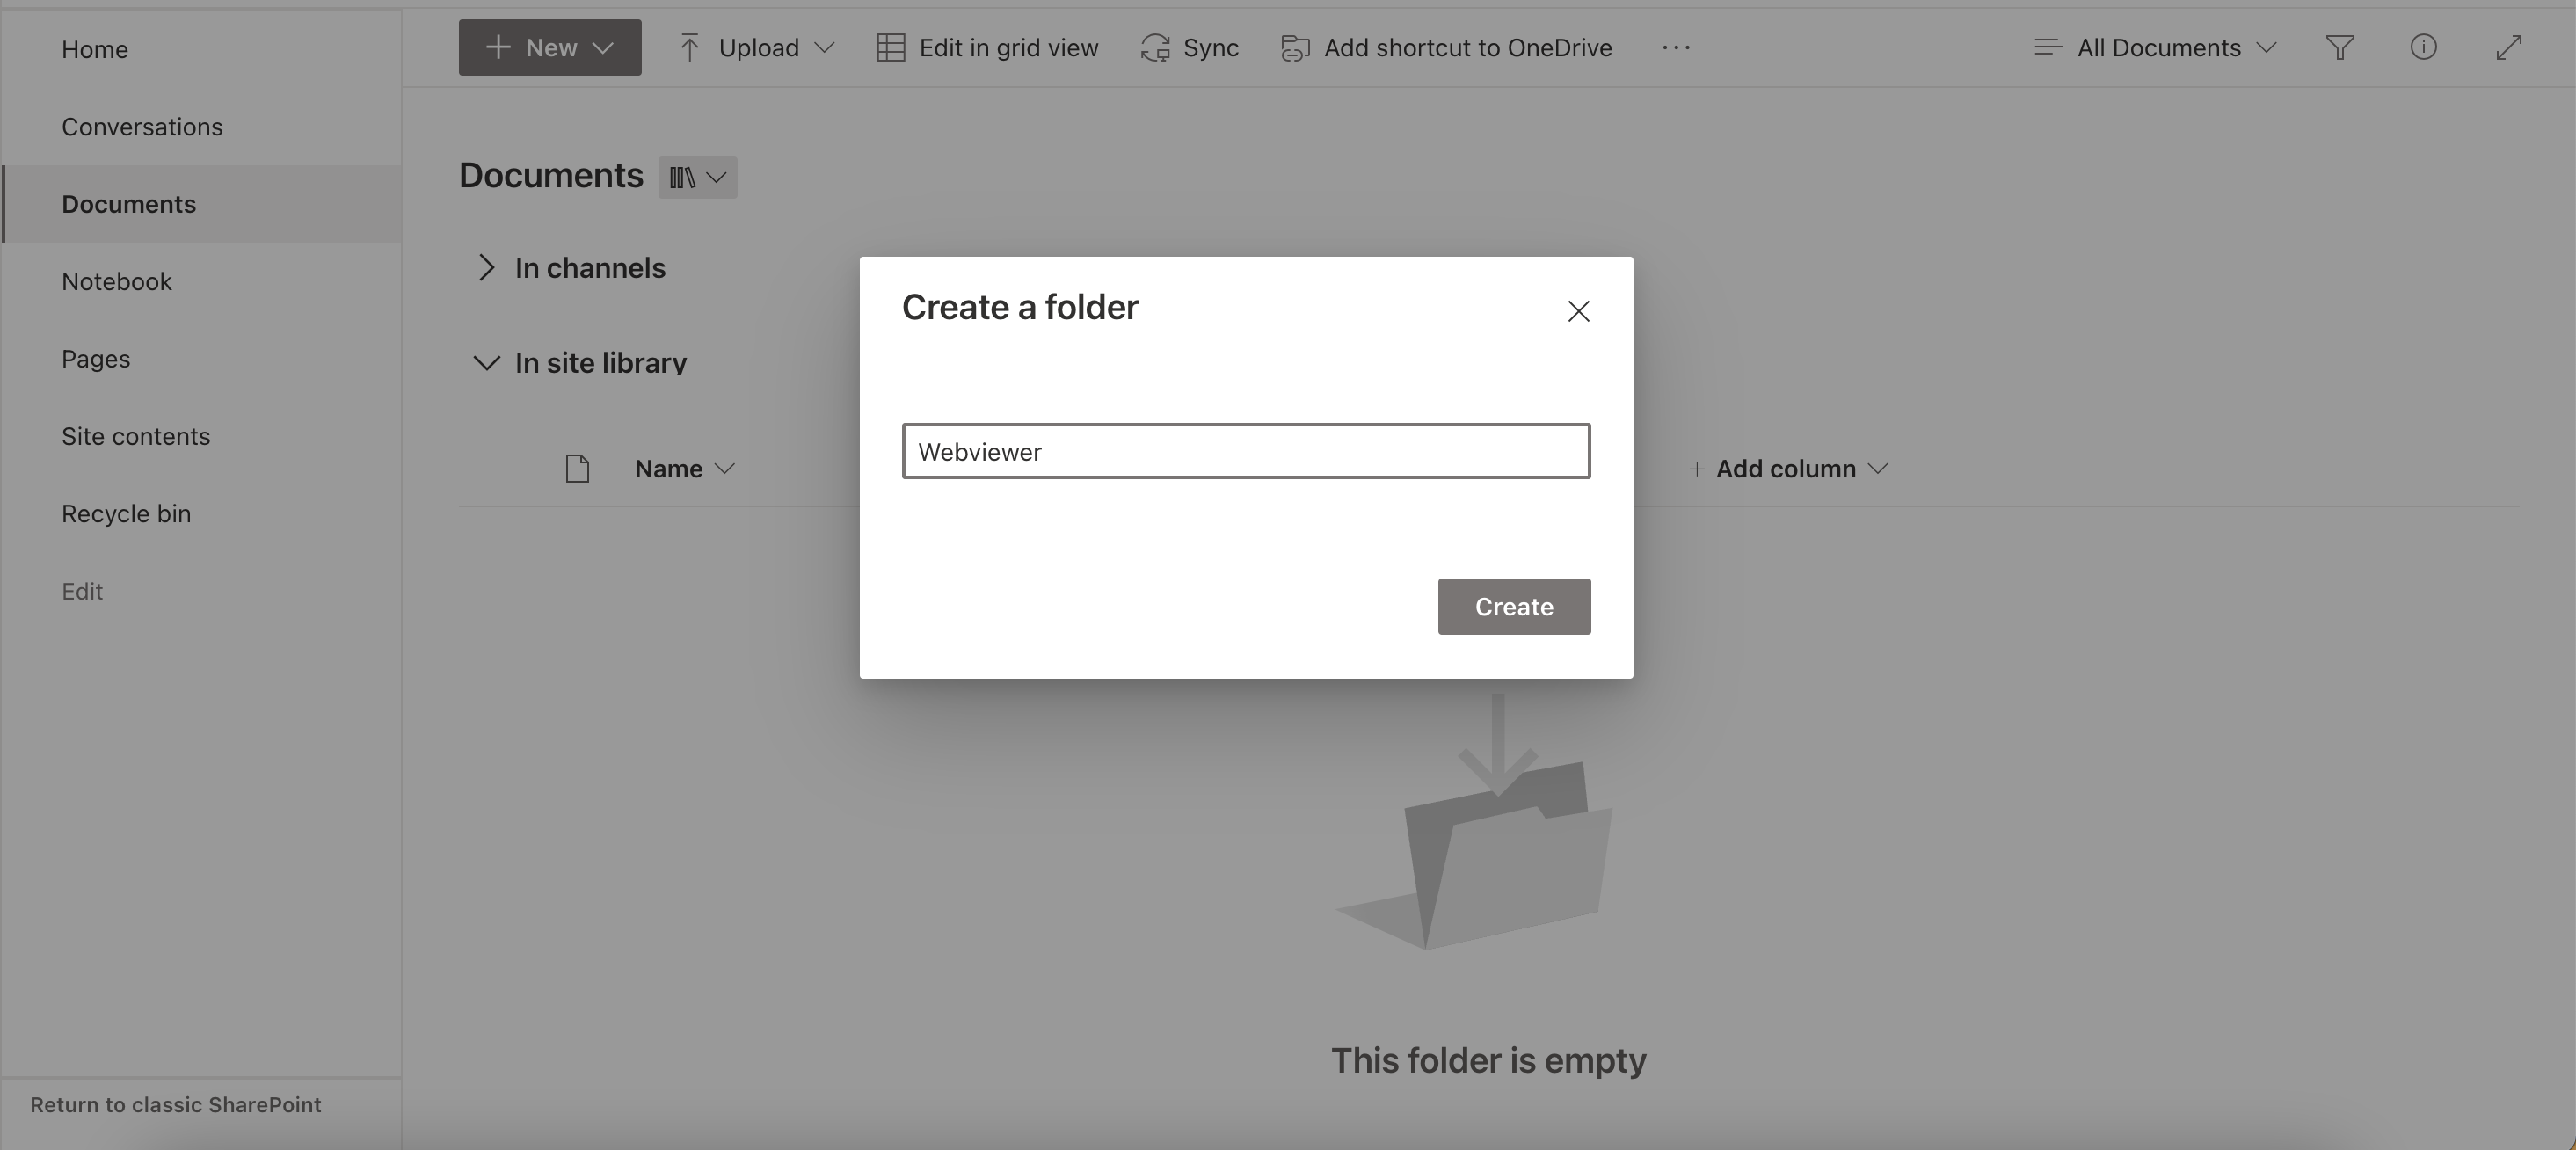 Create the Webviewer folder